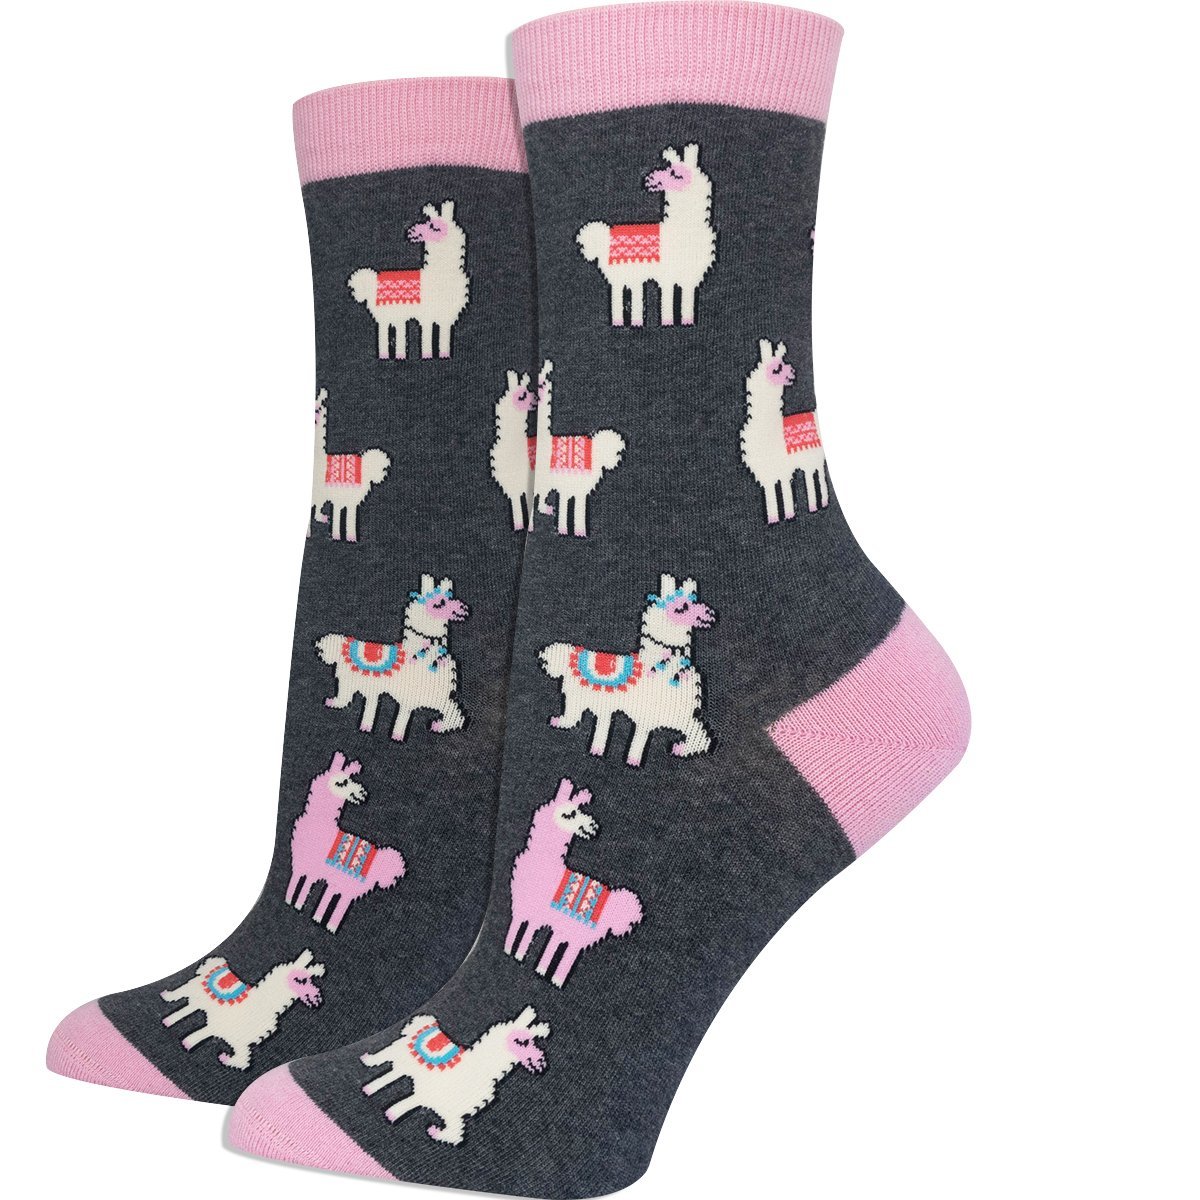 Llama Socks - Imagery Socks